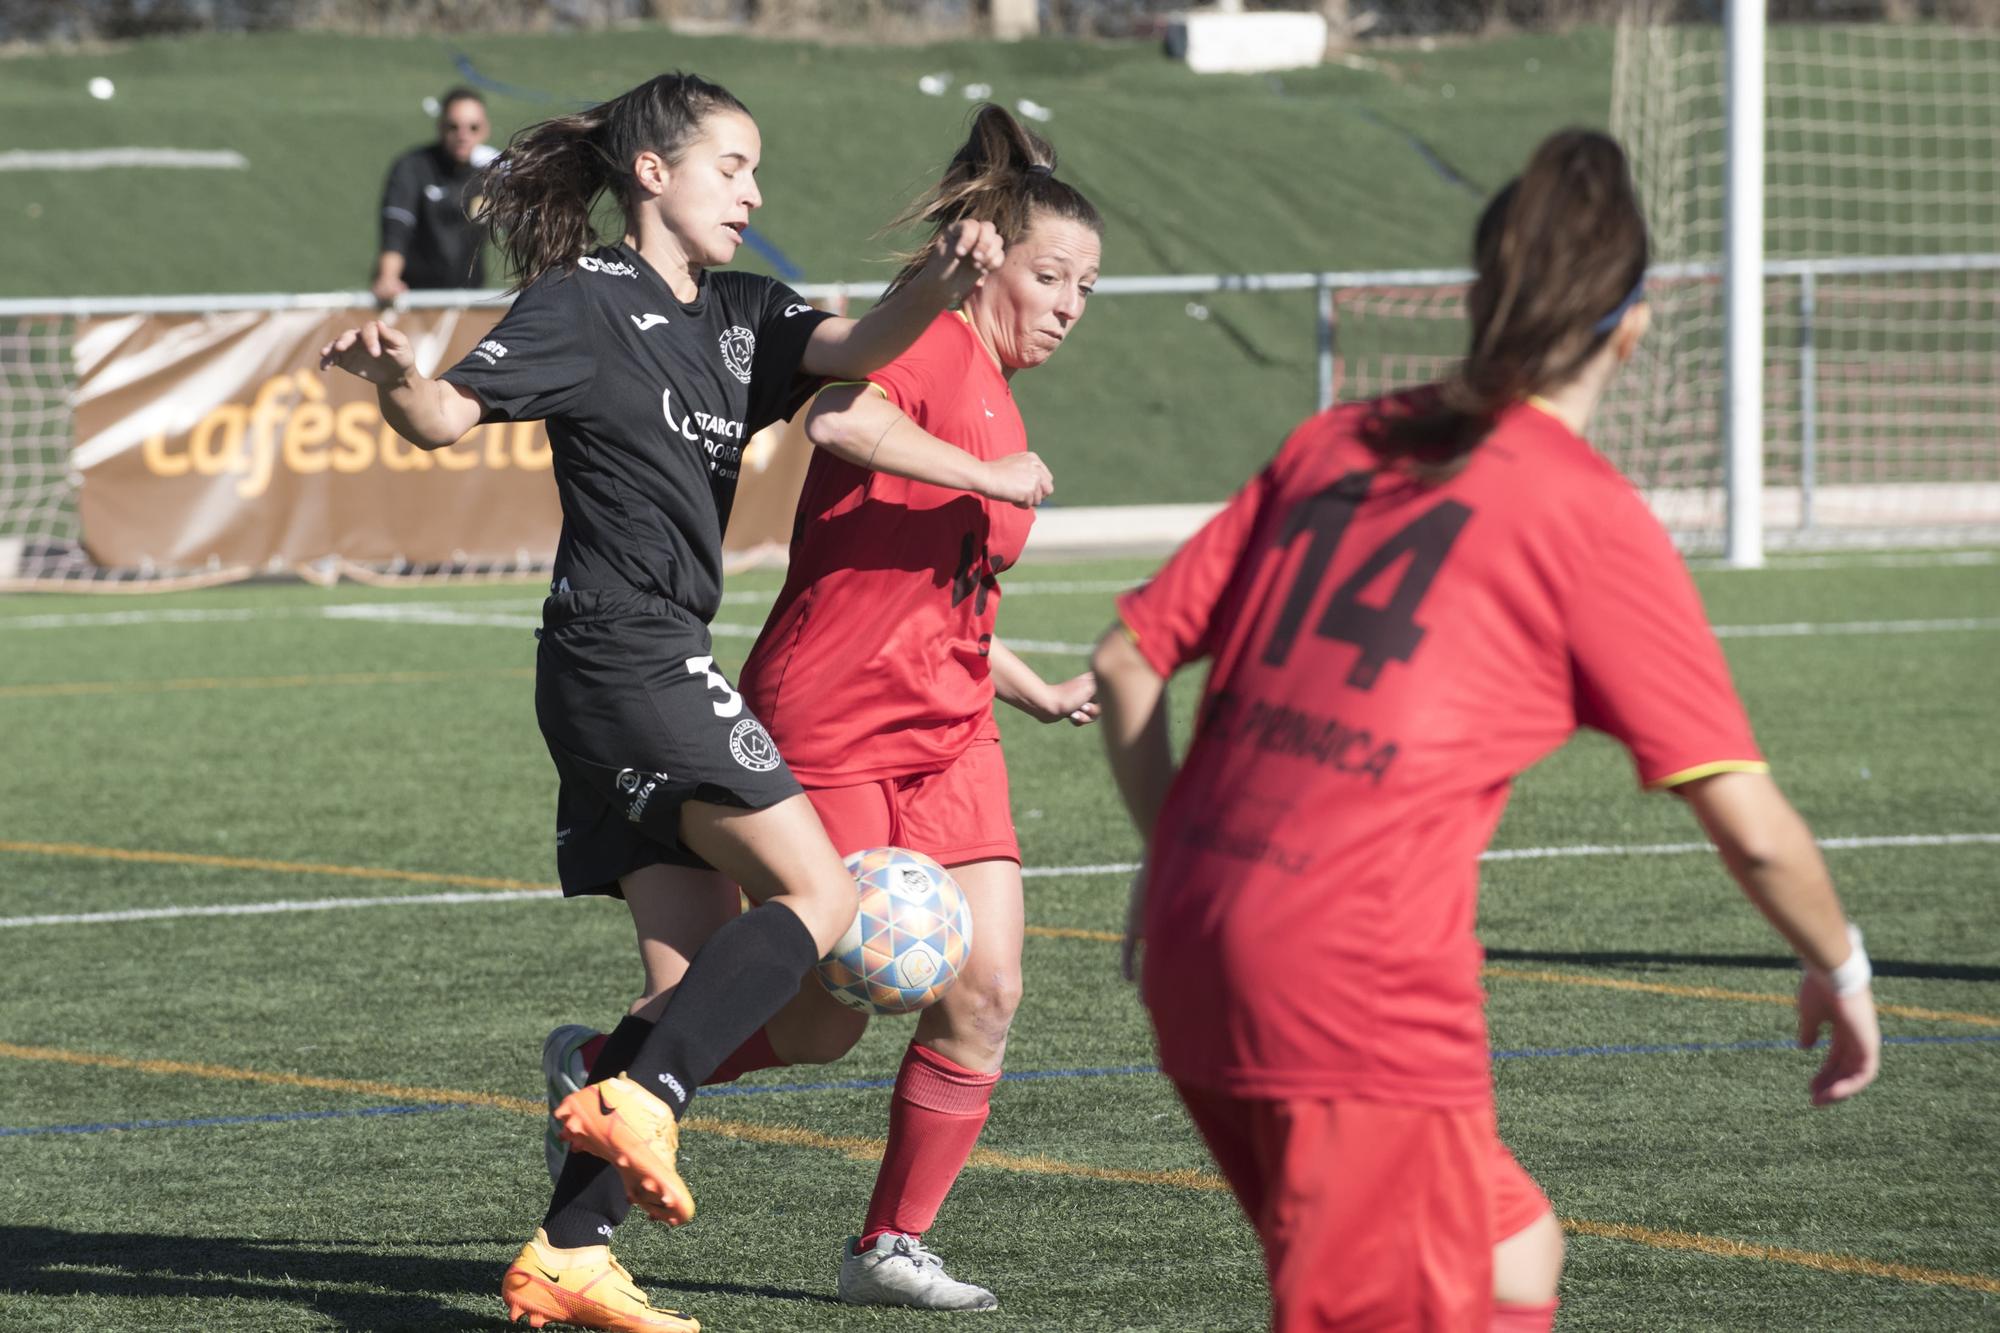 Les millors imatges del duel entre el FC Pirinaica i el FC Pirineus de la Seu d'Urgell